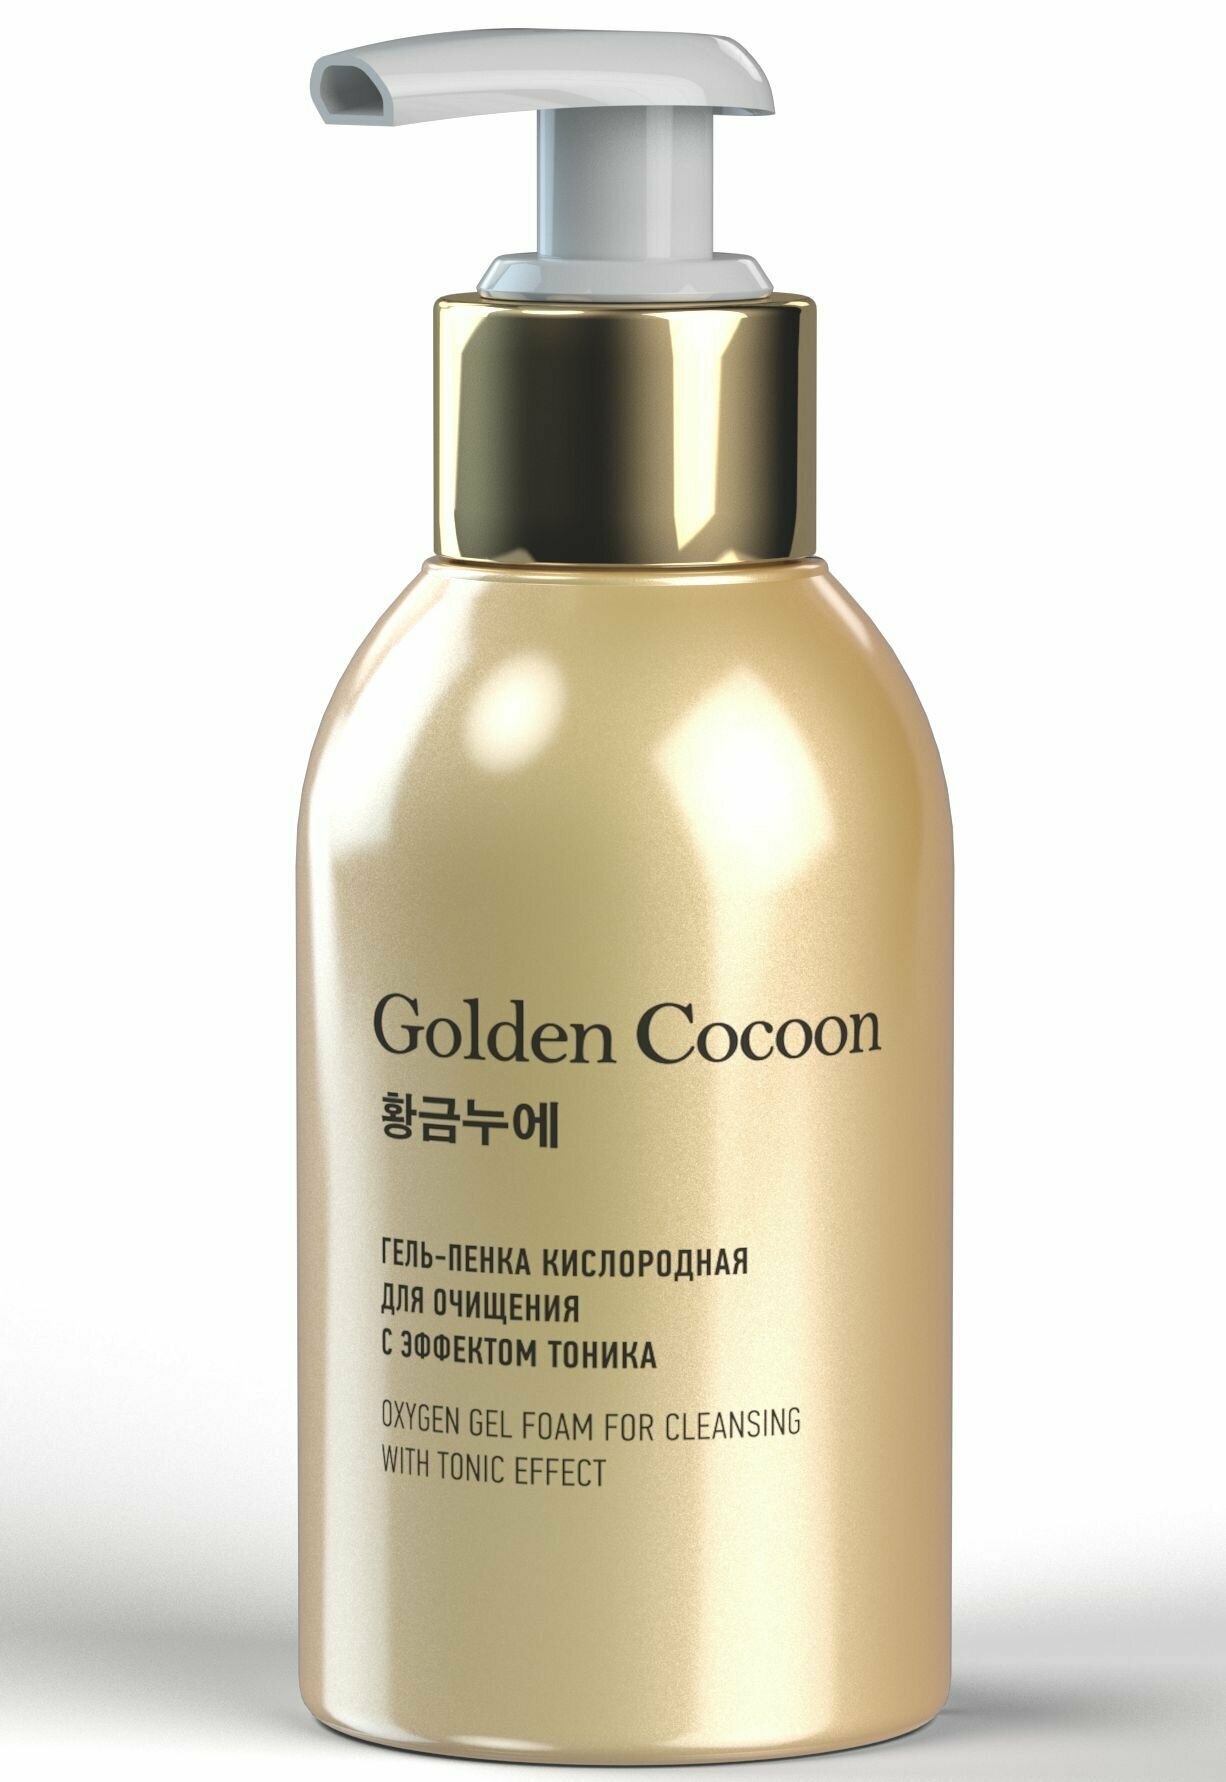 Гель-пенка кислородная Golden Cocoon. Очищает, увлажняет, активизирует клеточное дыхание и тонизирует кожу.